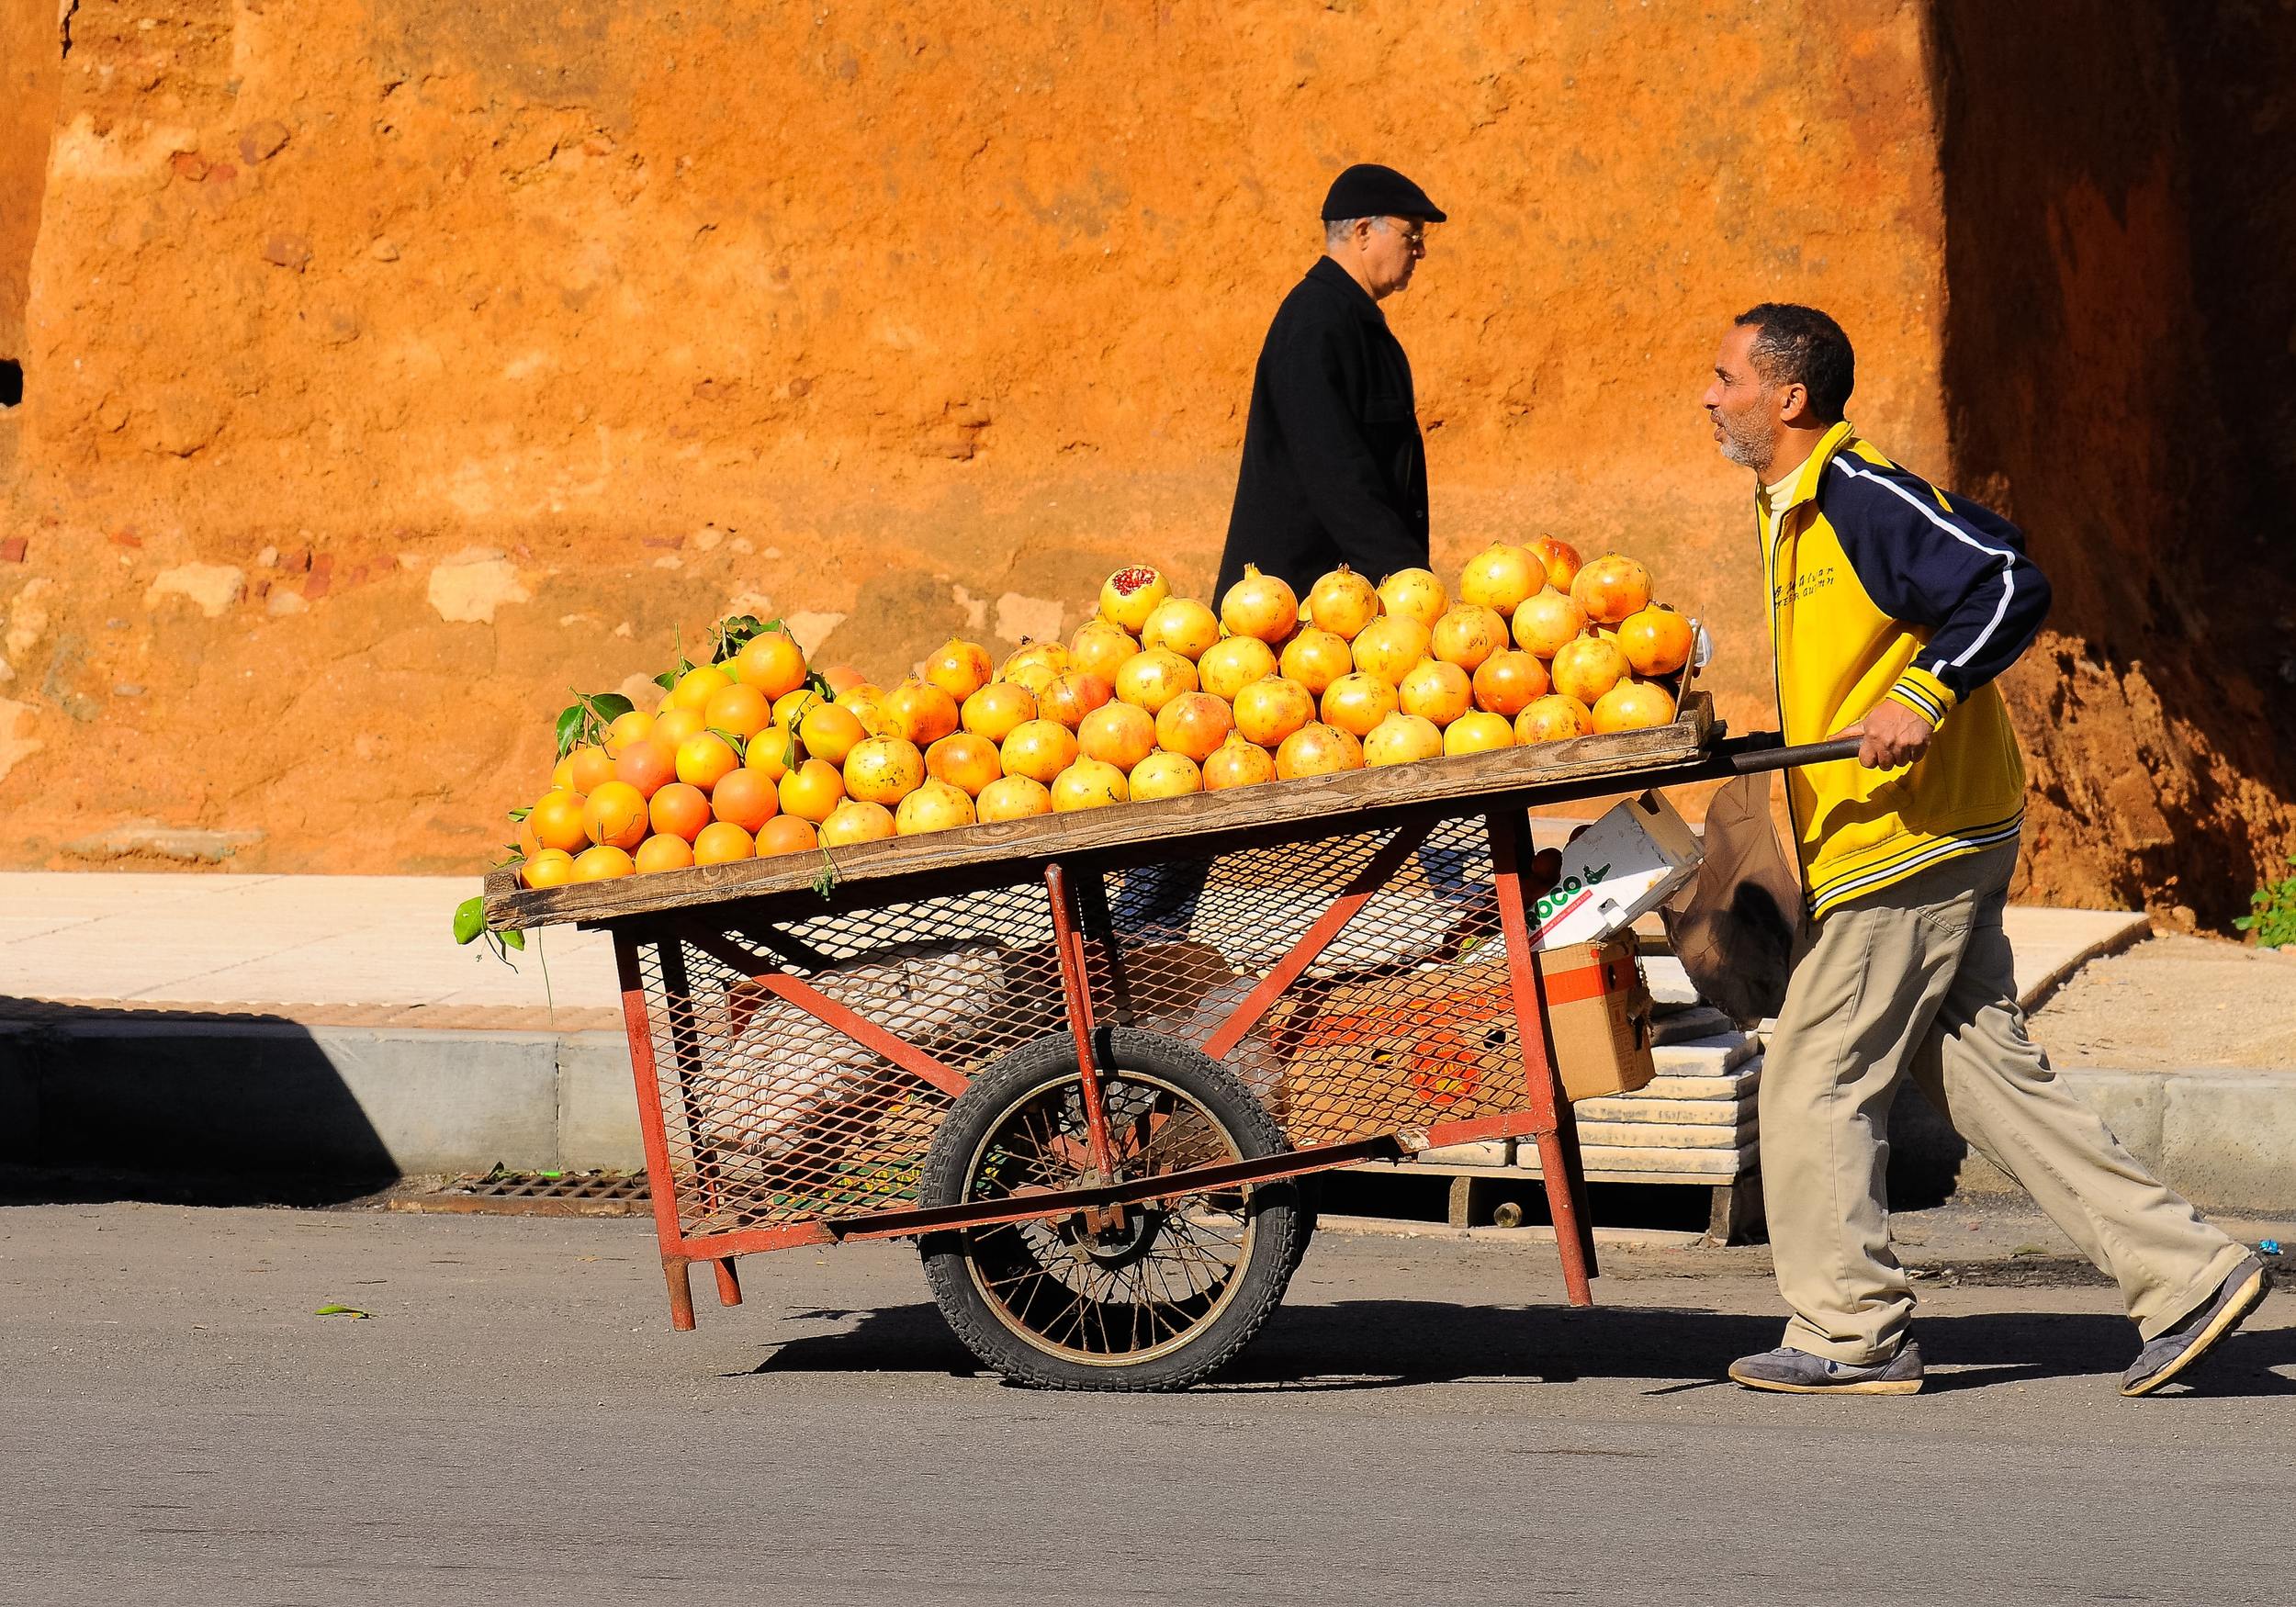 Orangen in Casablanca Foto von Eduardo C.G auf Unsplash